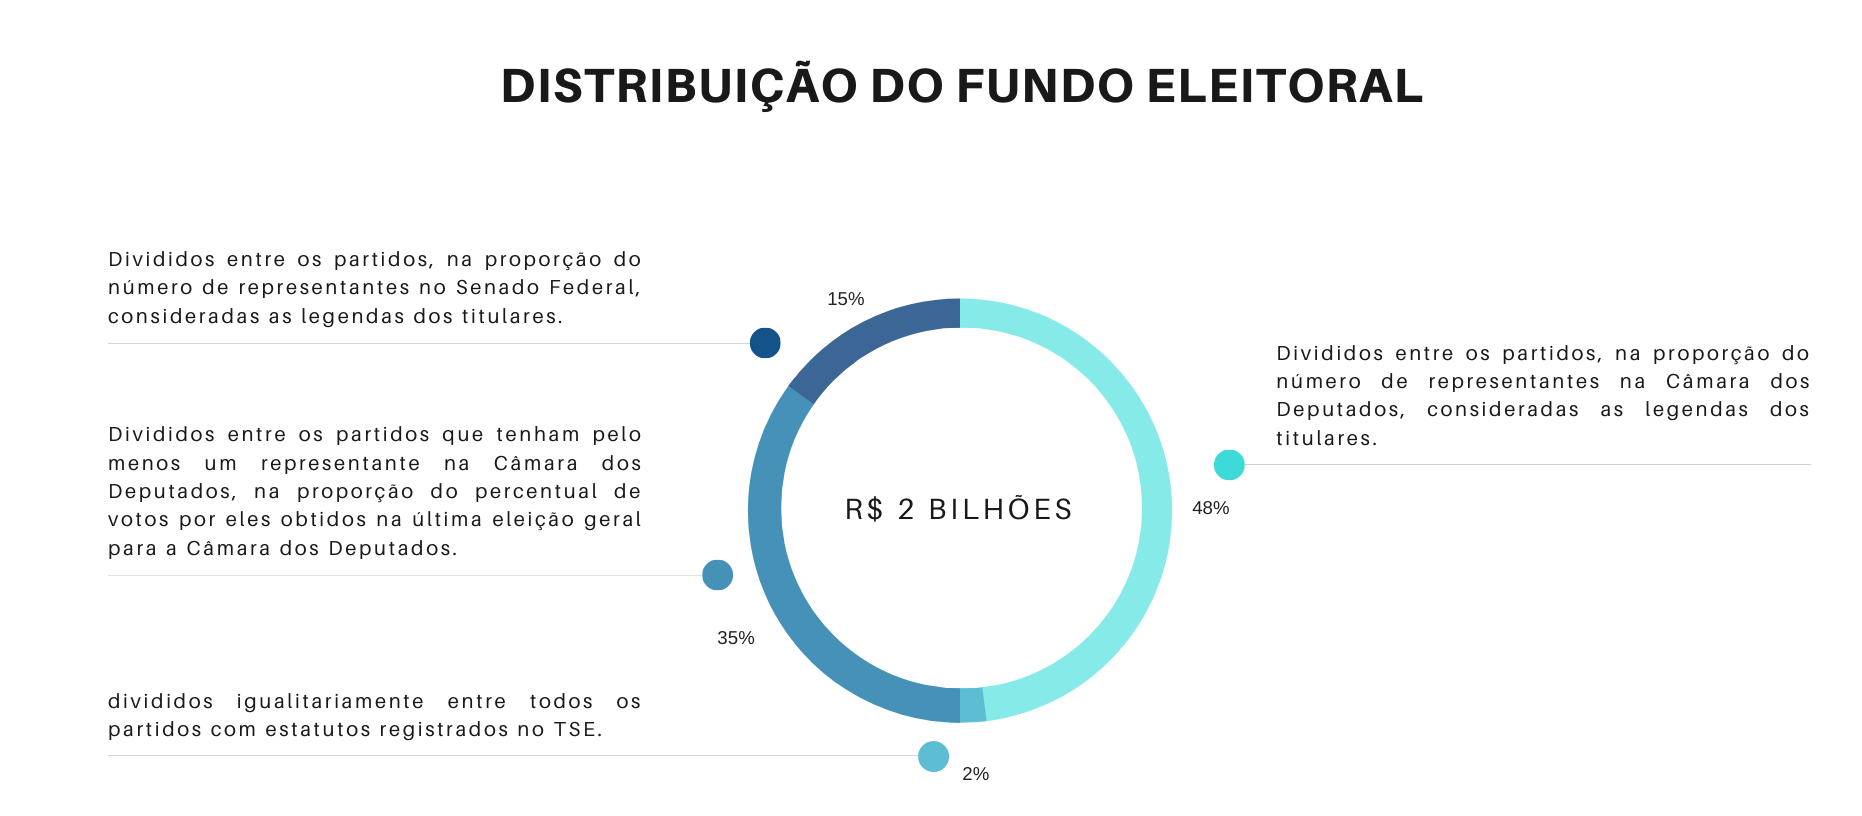 Distribuição do fundo eleitoral para campanha de vereador